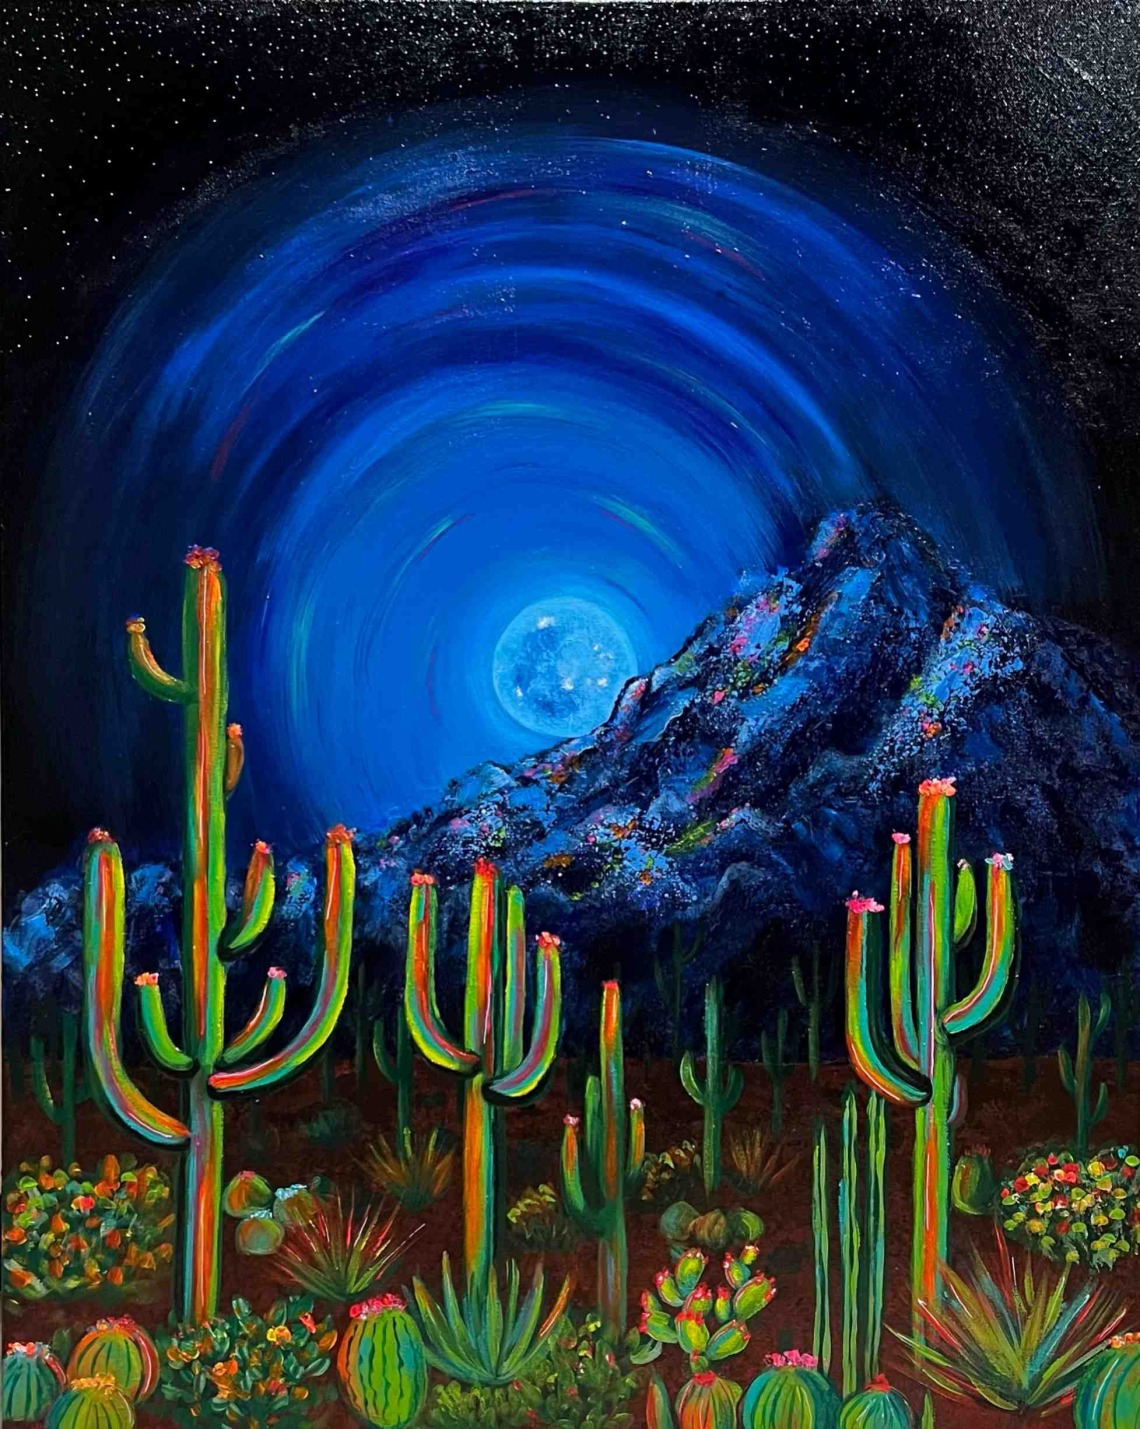 cactus at night